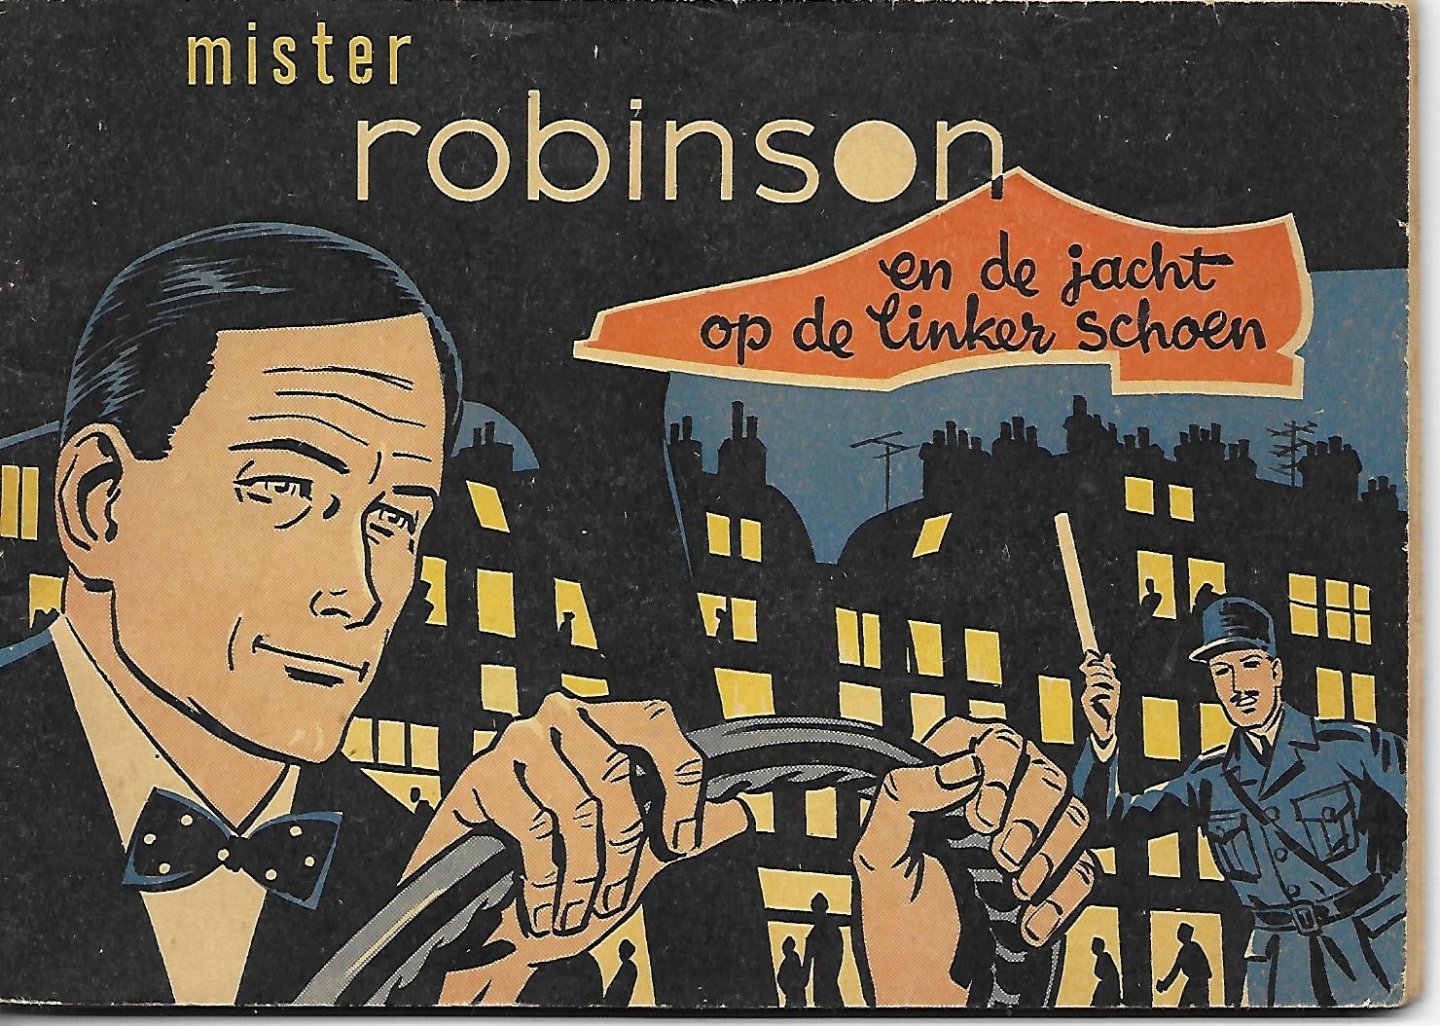 onbekend - Mister Robinson en de jacht op de linker schoen